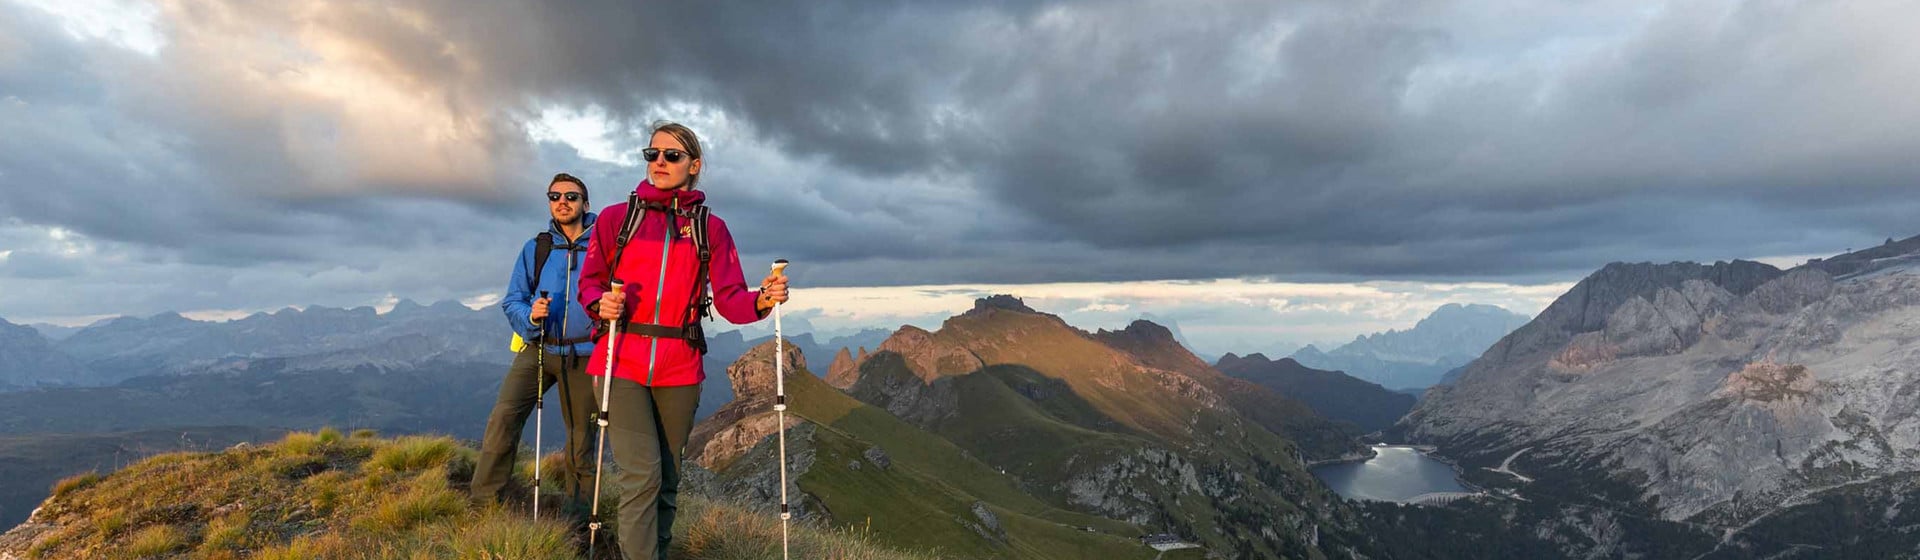 September: Monat der wechselnden Farben in den Dolomiten